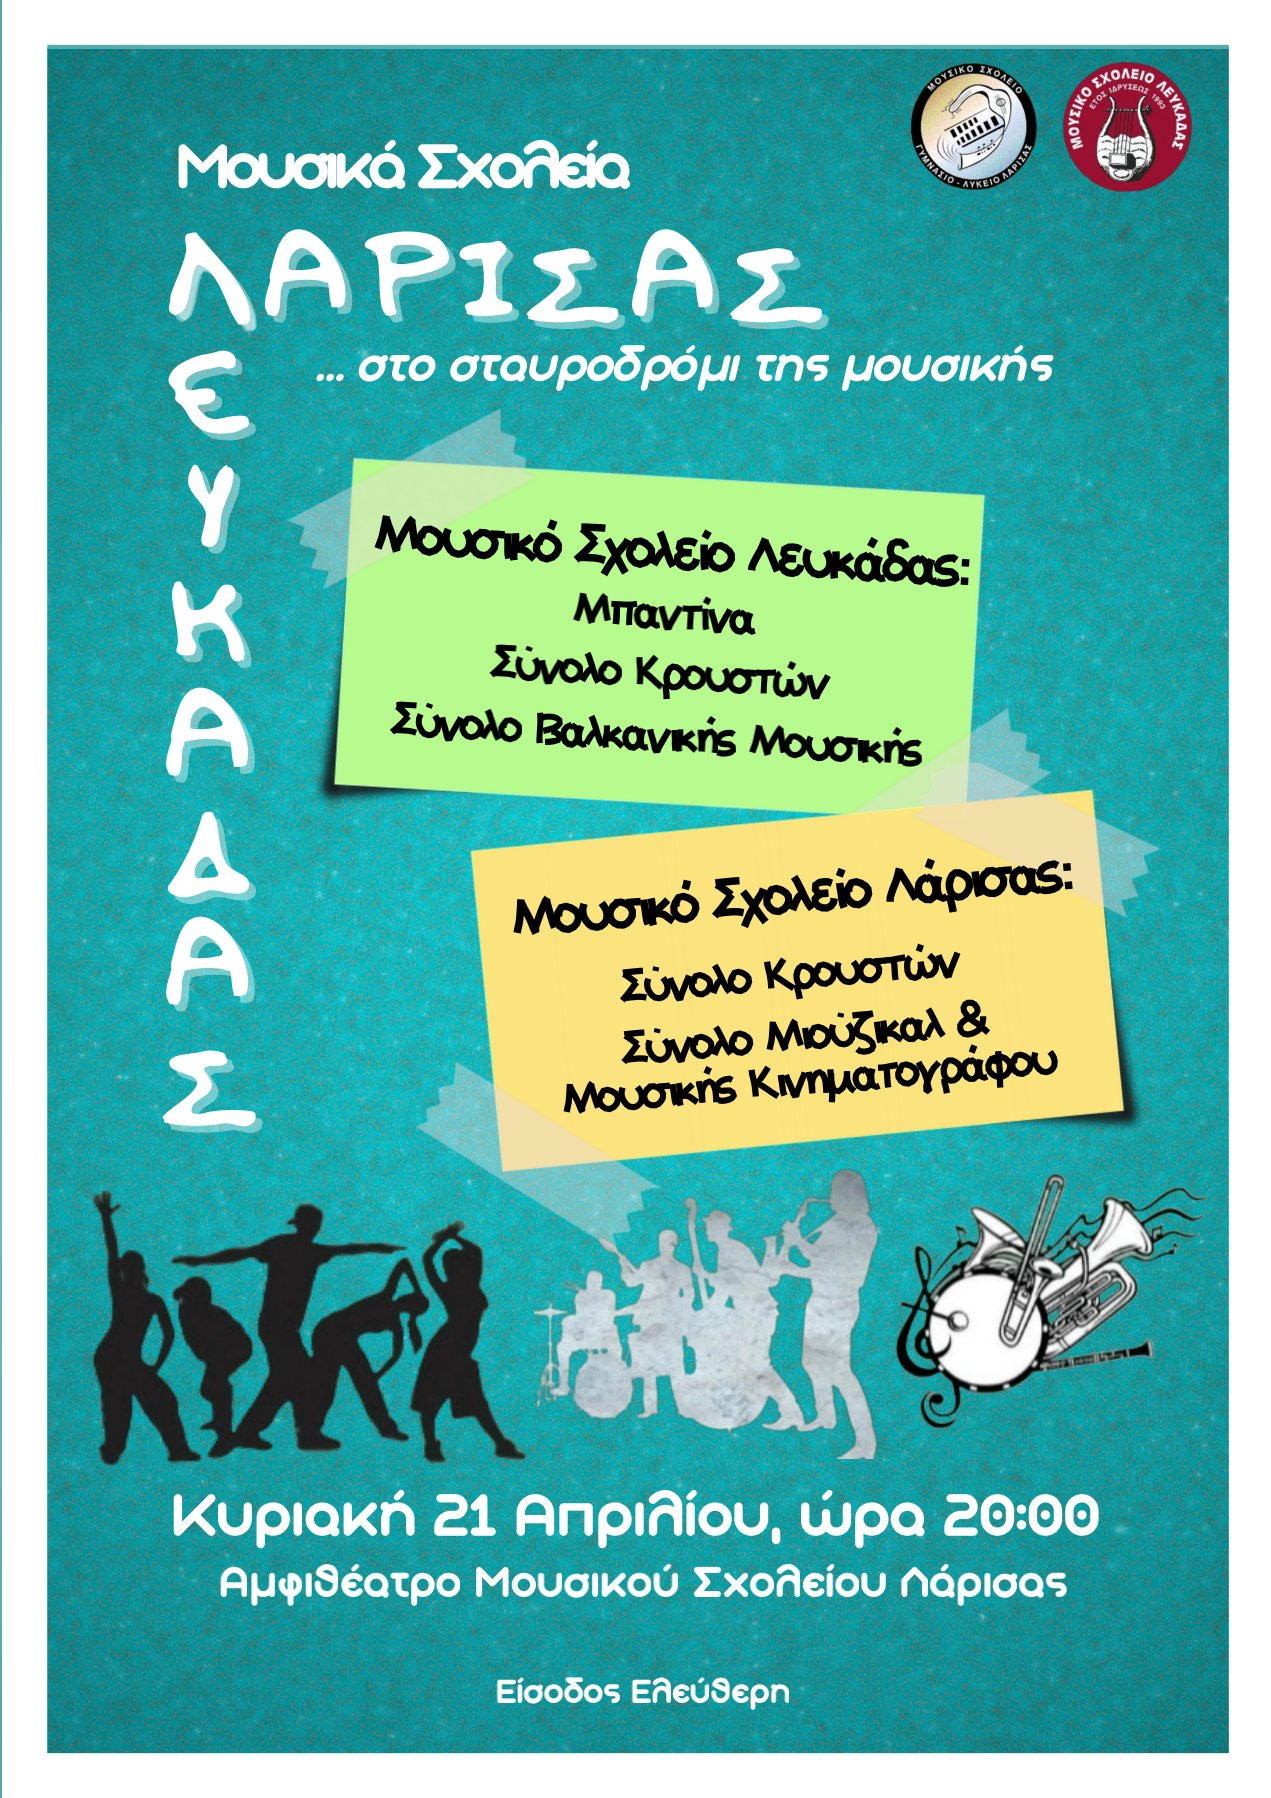 Μουσικό Σχολείο Λάρισας και Λευκάδας ξανασυναντώνται "…στο σταυροδρόμι της μουσικής"